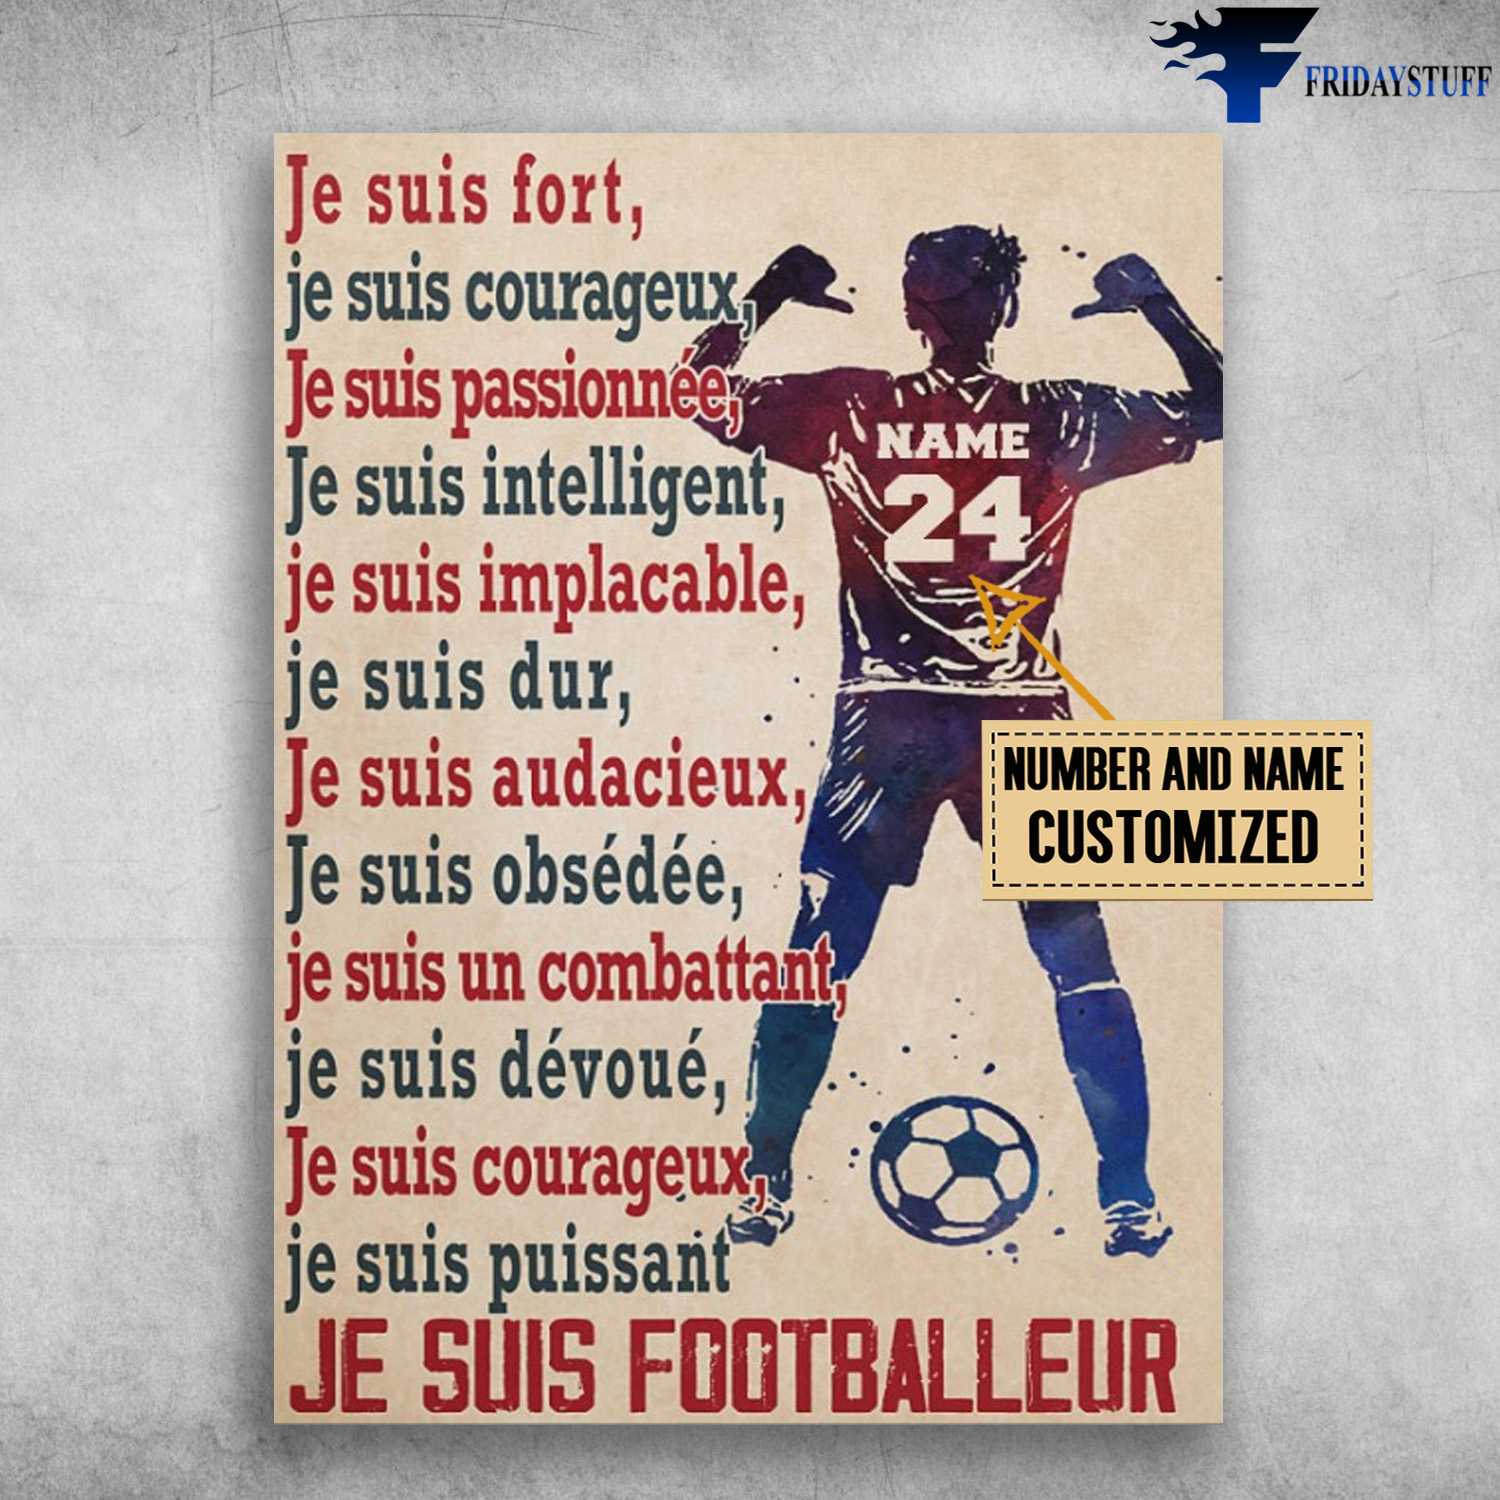 Soccer Poster, Je Suis Fort, Je Suis Courageux, Je Suis Passionnée, Je Suis Intelligent, Je Suis Implacable, Je Suis Footballeur